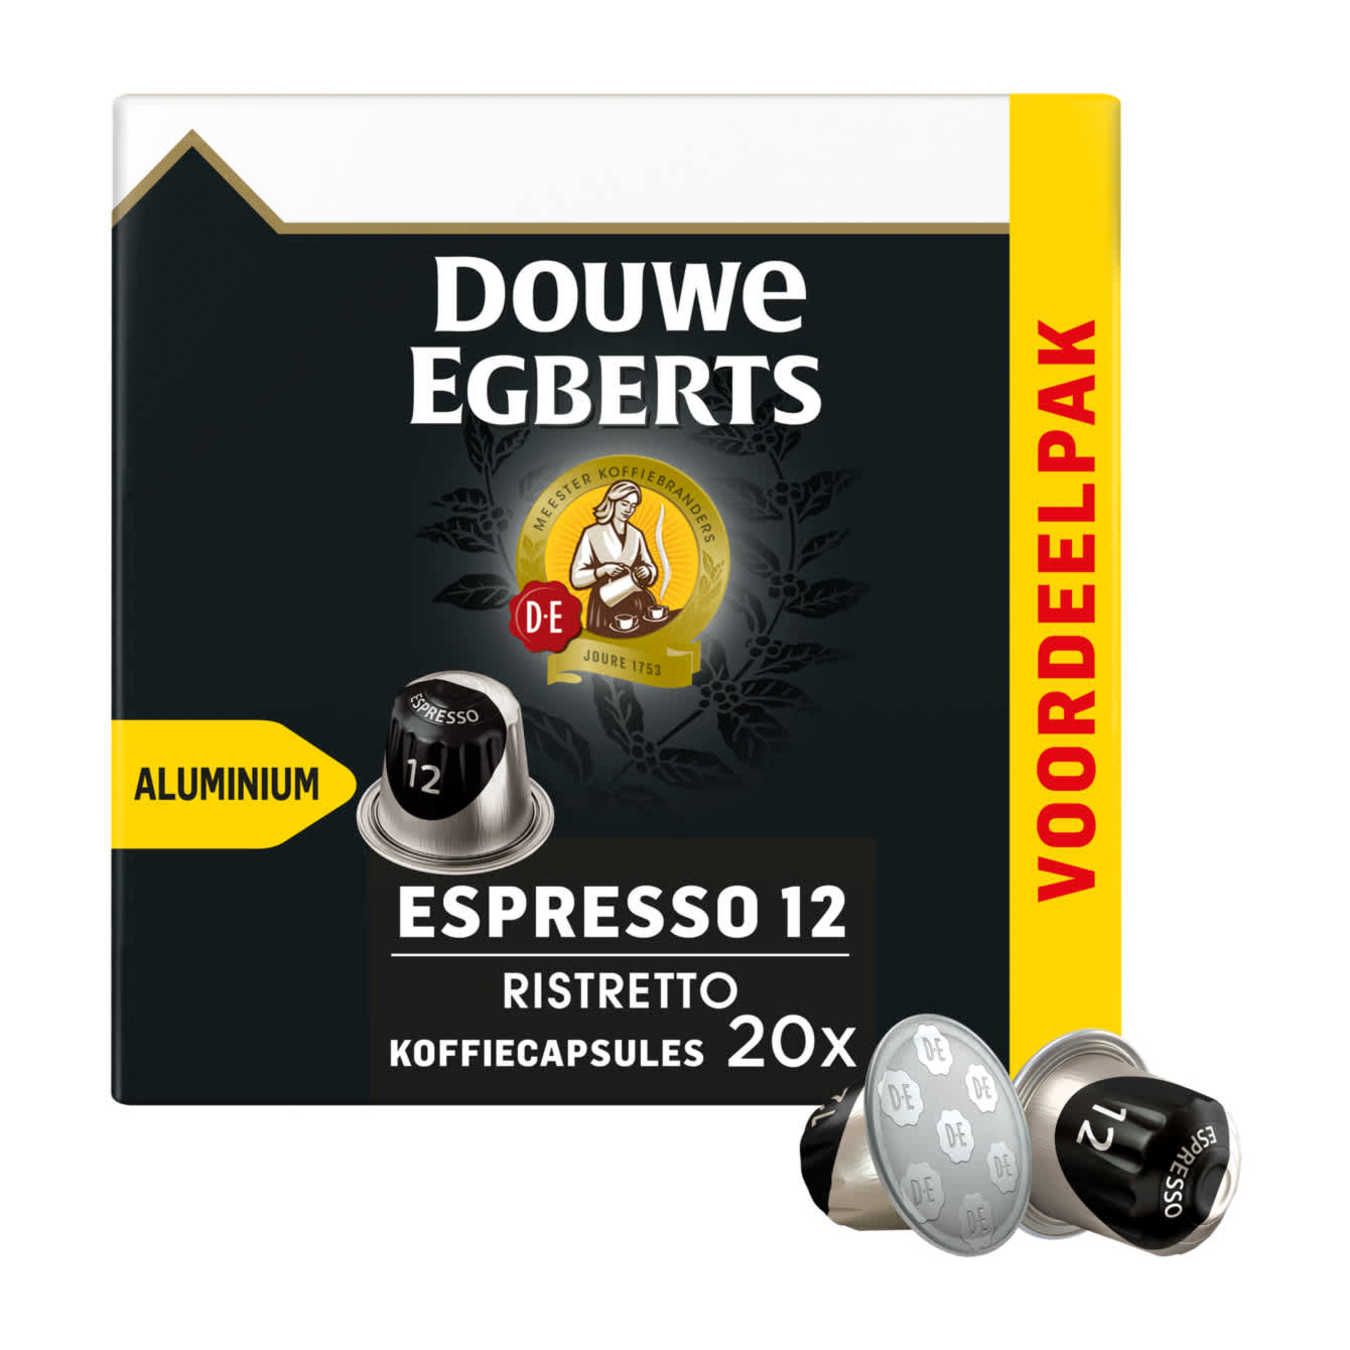 Douwe Egberts Nespresso Espresso/Ristretto